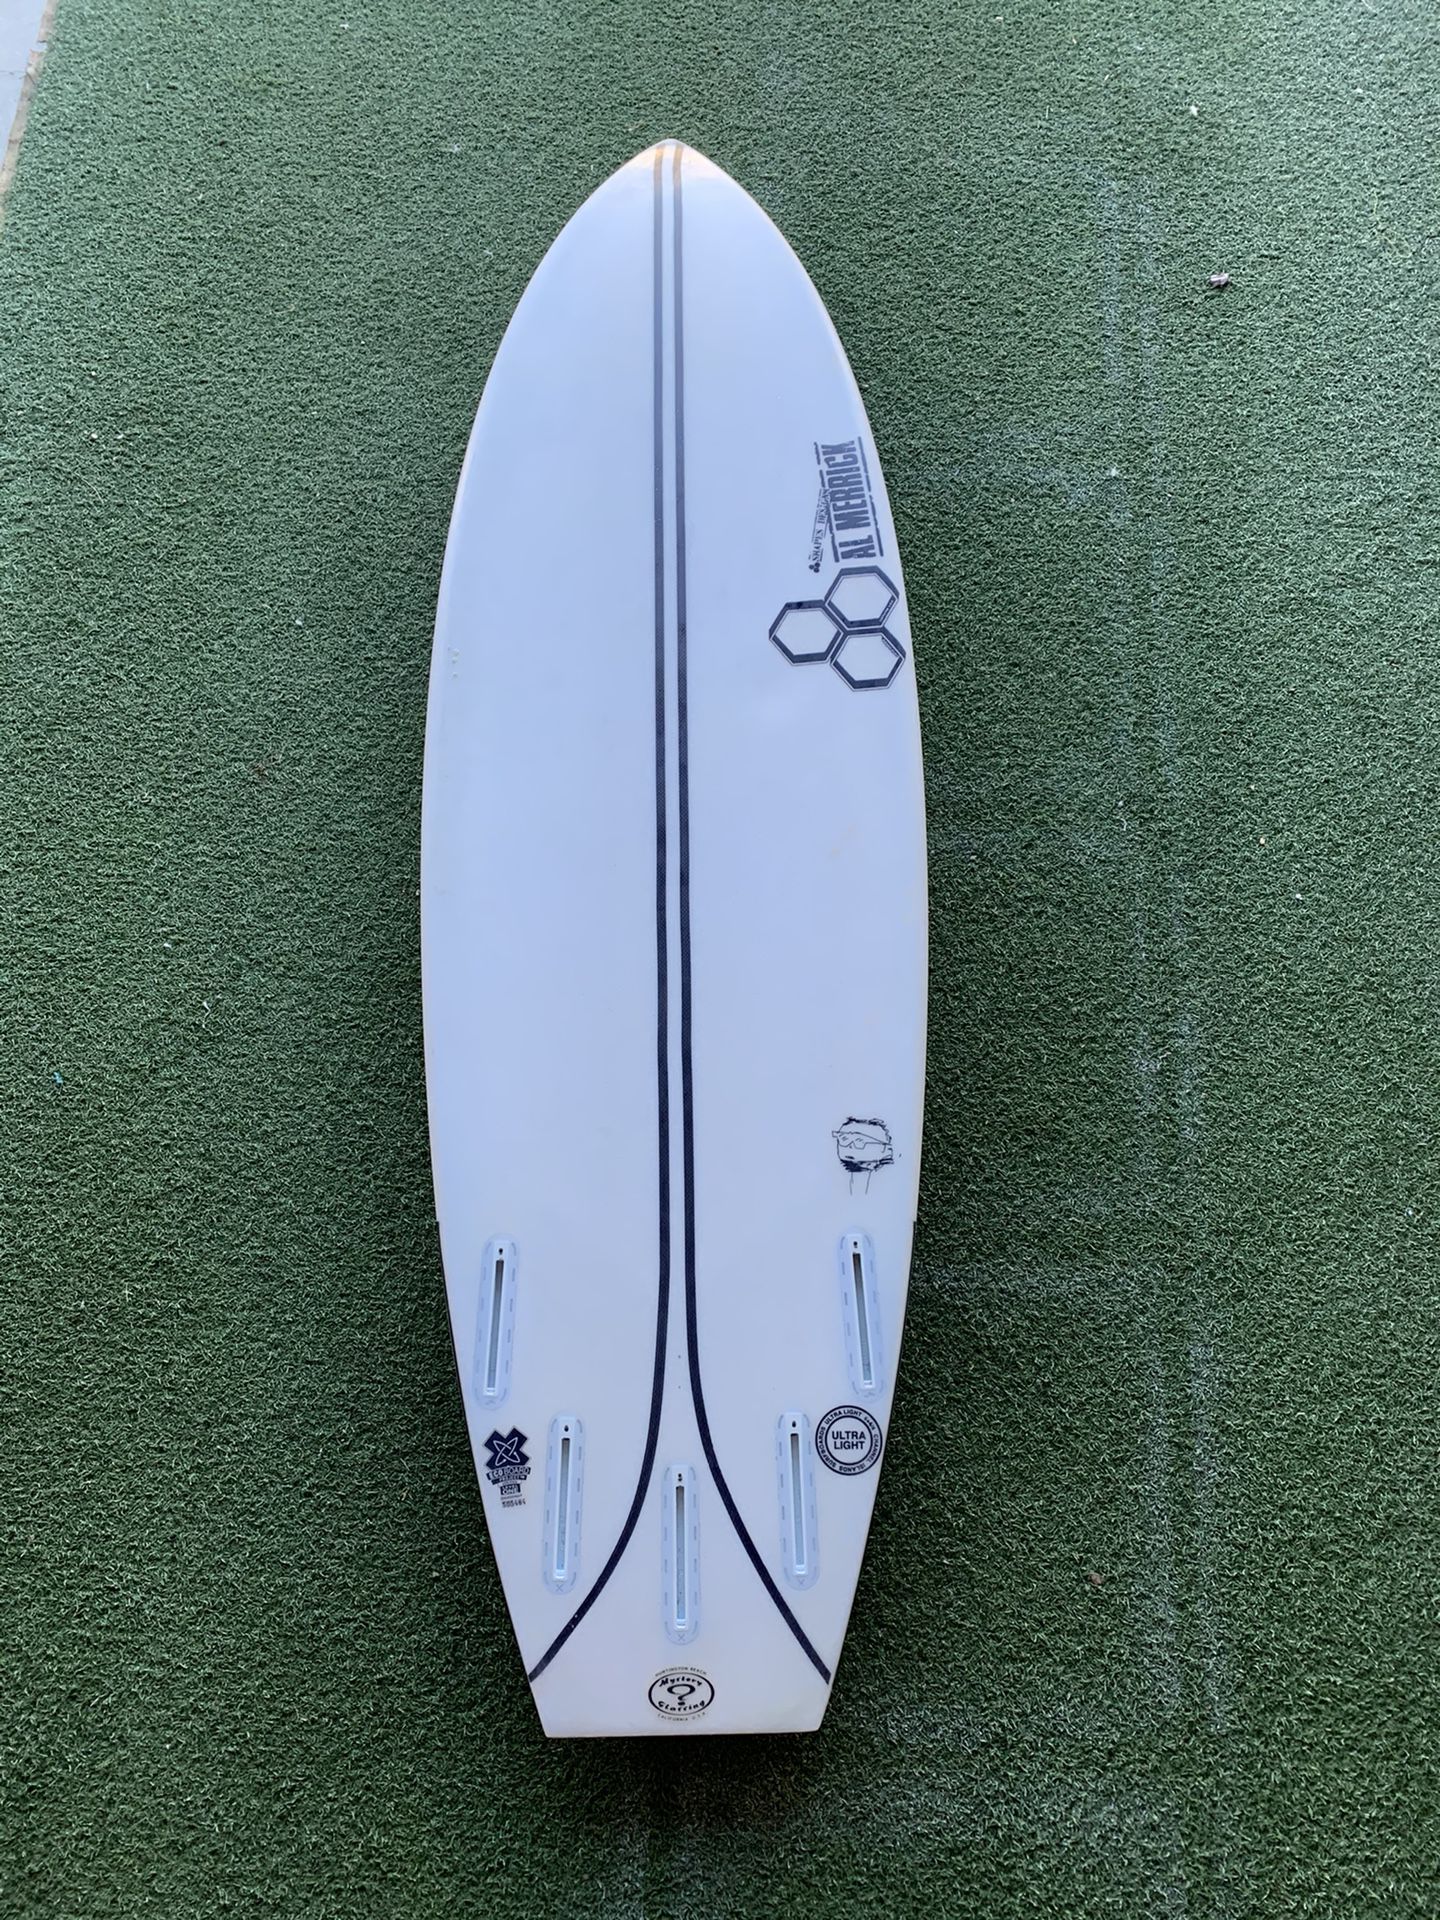 Channel Islands Surfboard